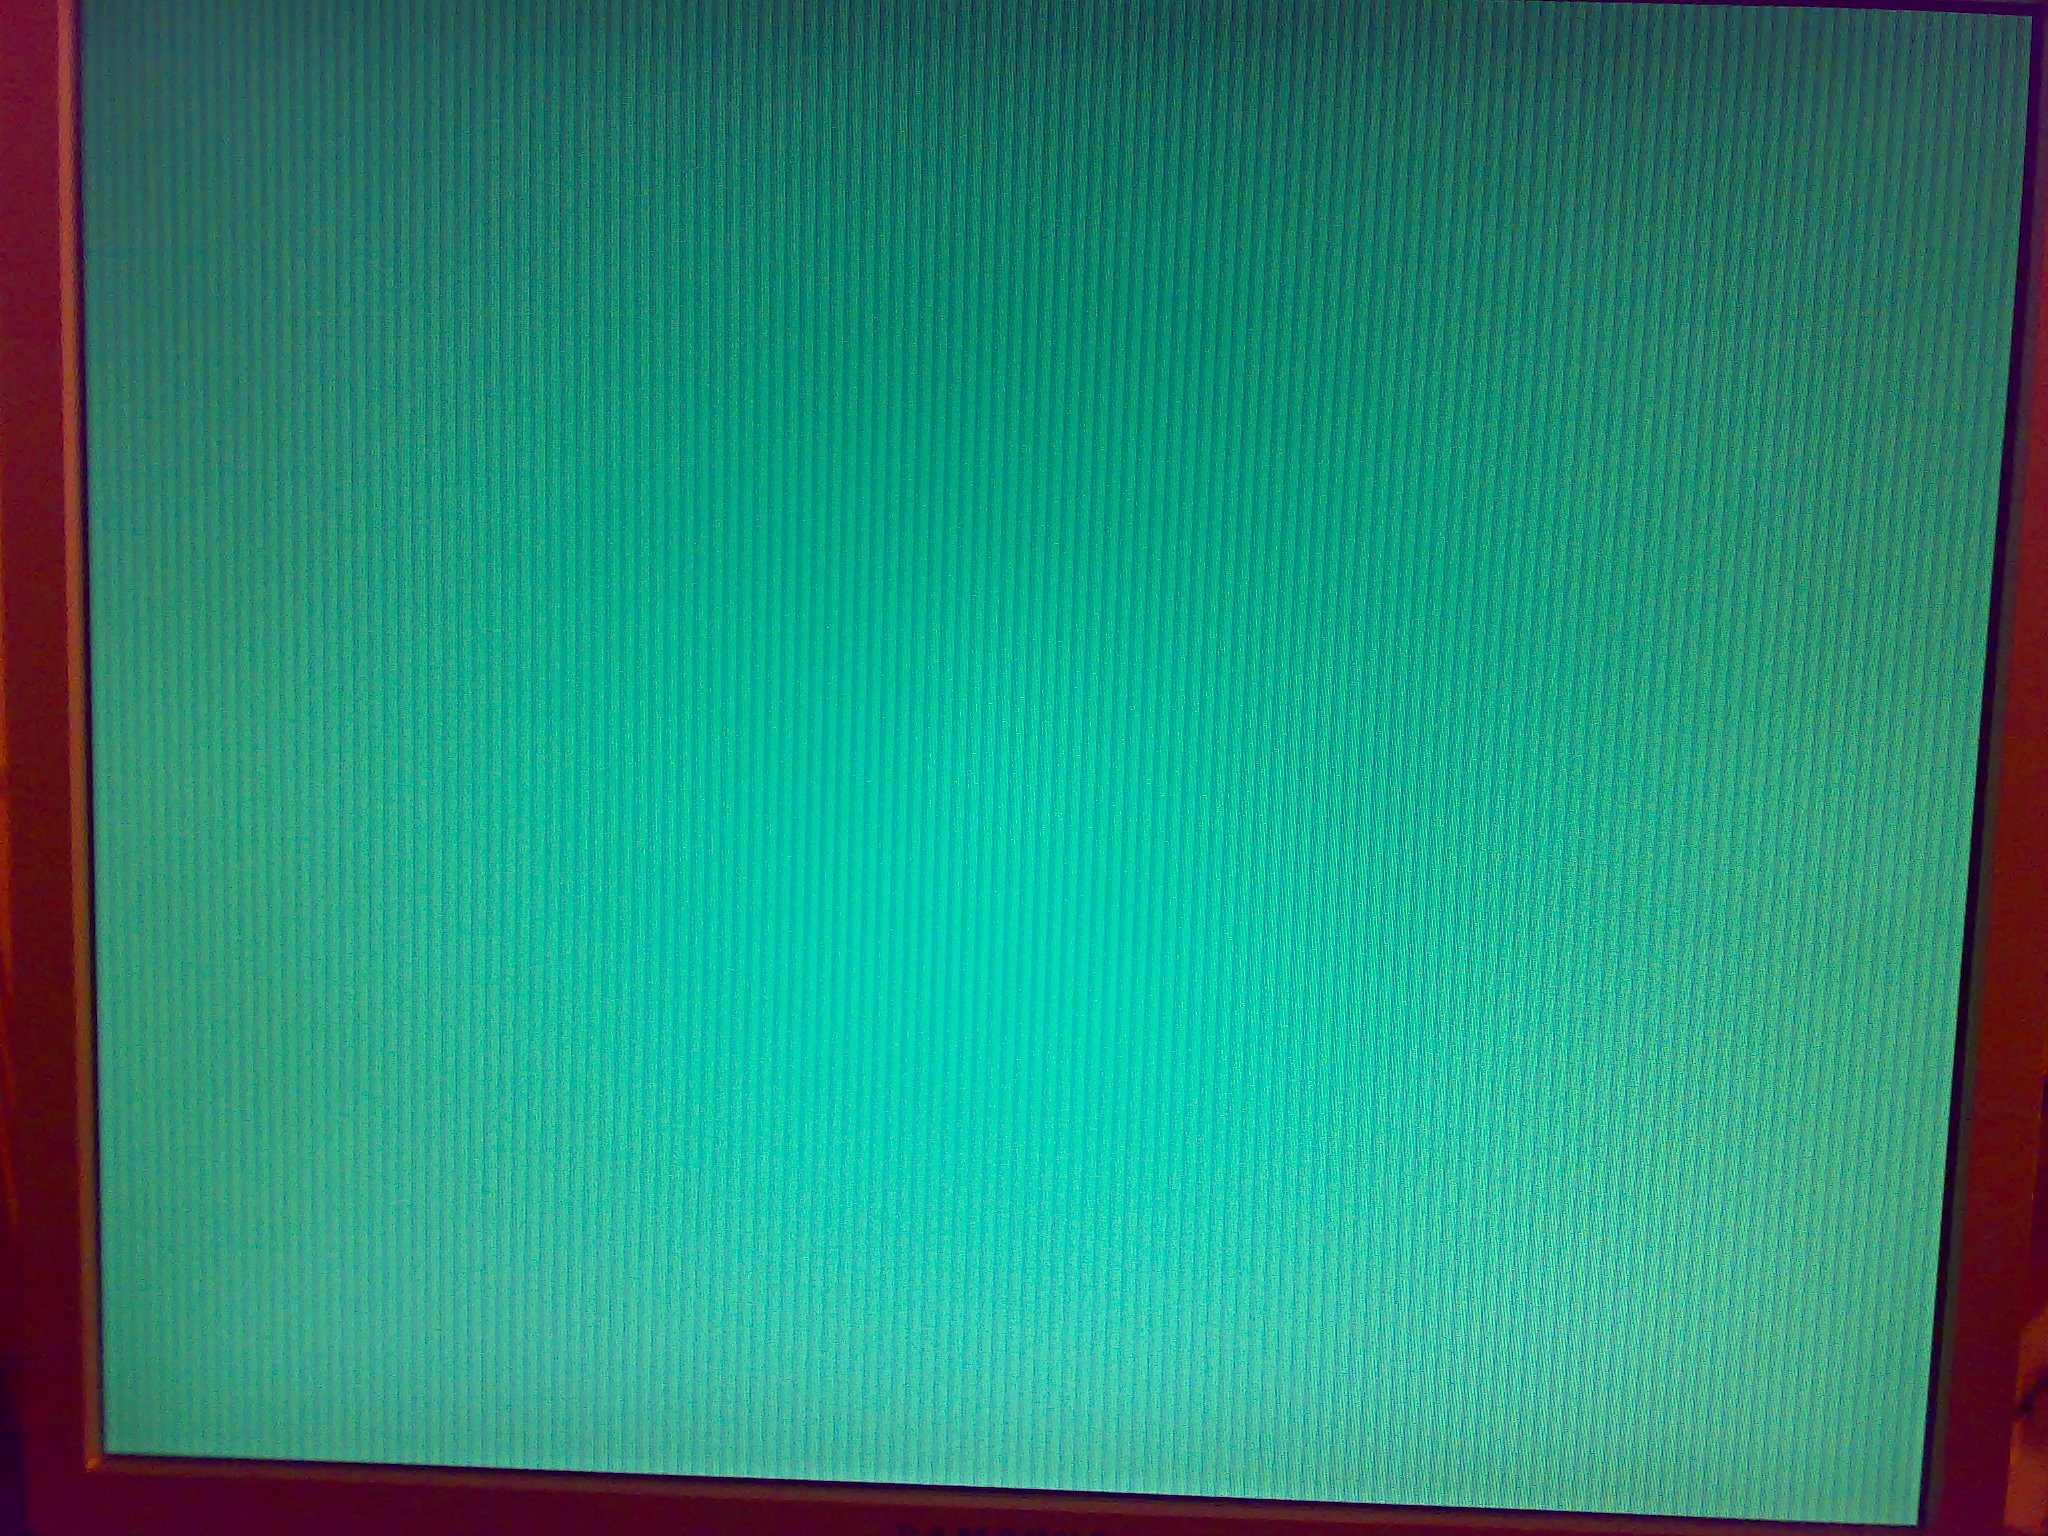 Синяя полоса на экране. Синий экран с полосками. Голубой полосатый экран. Полосы на экране и зависание. Полосатый экран на компьютере.